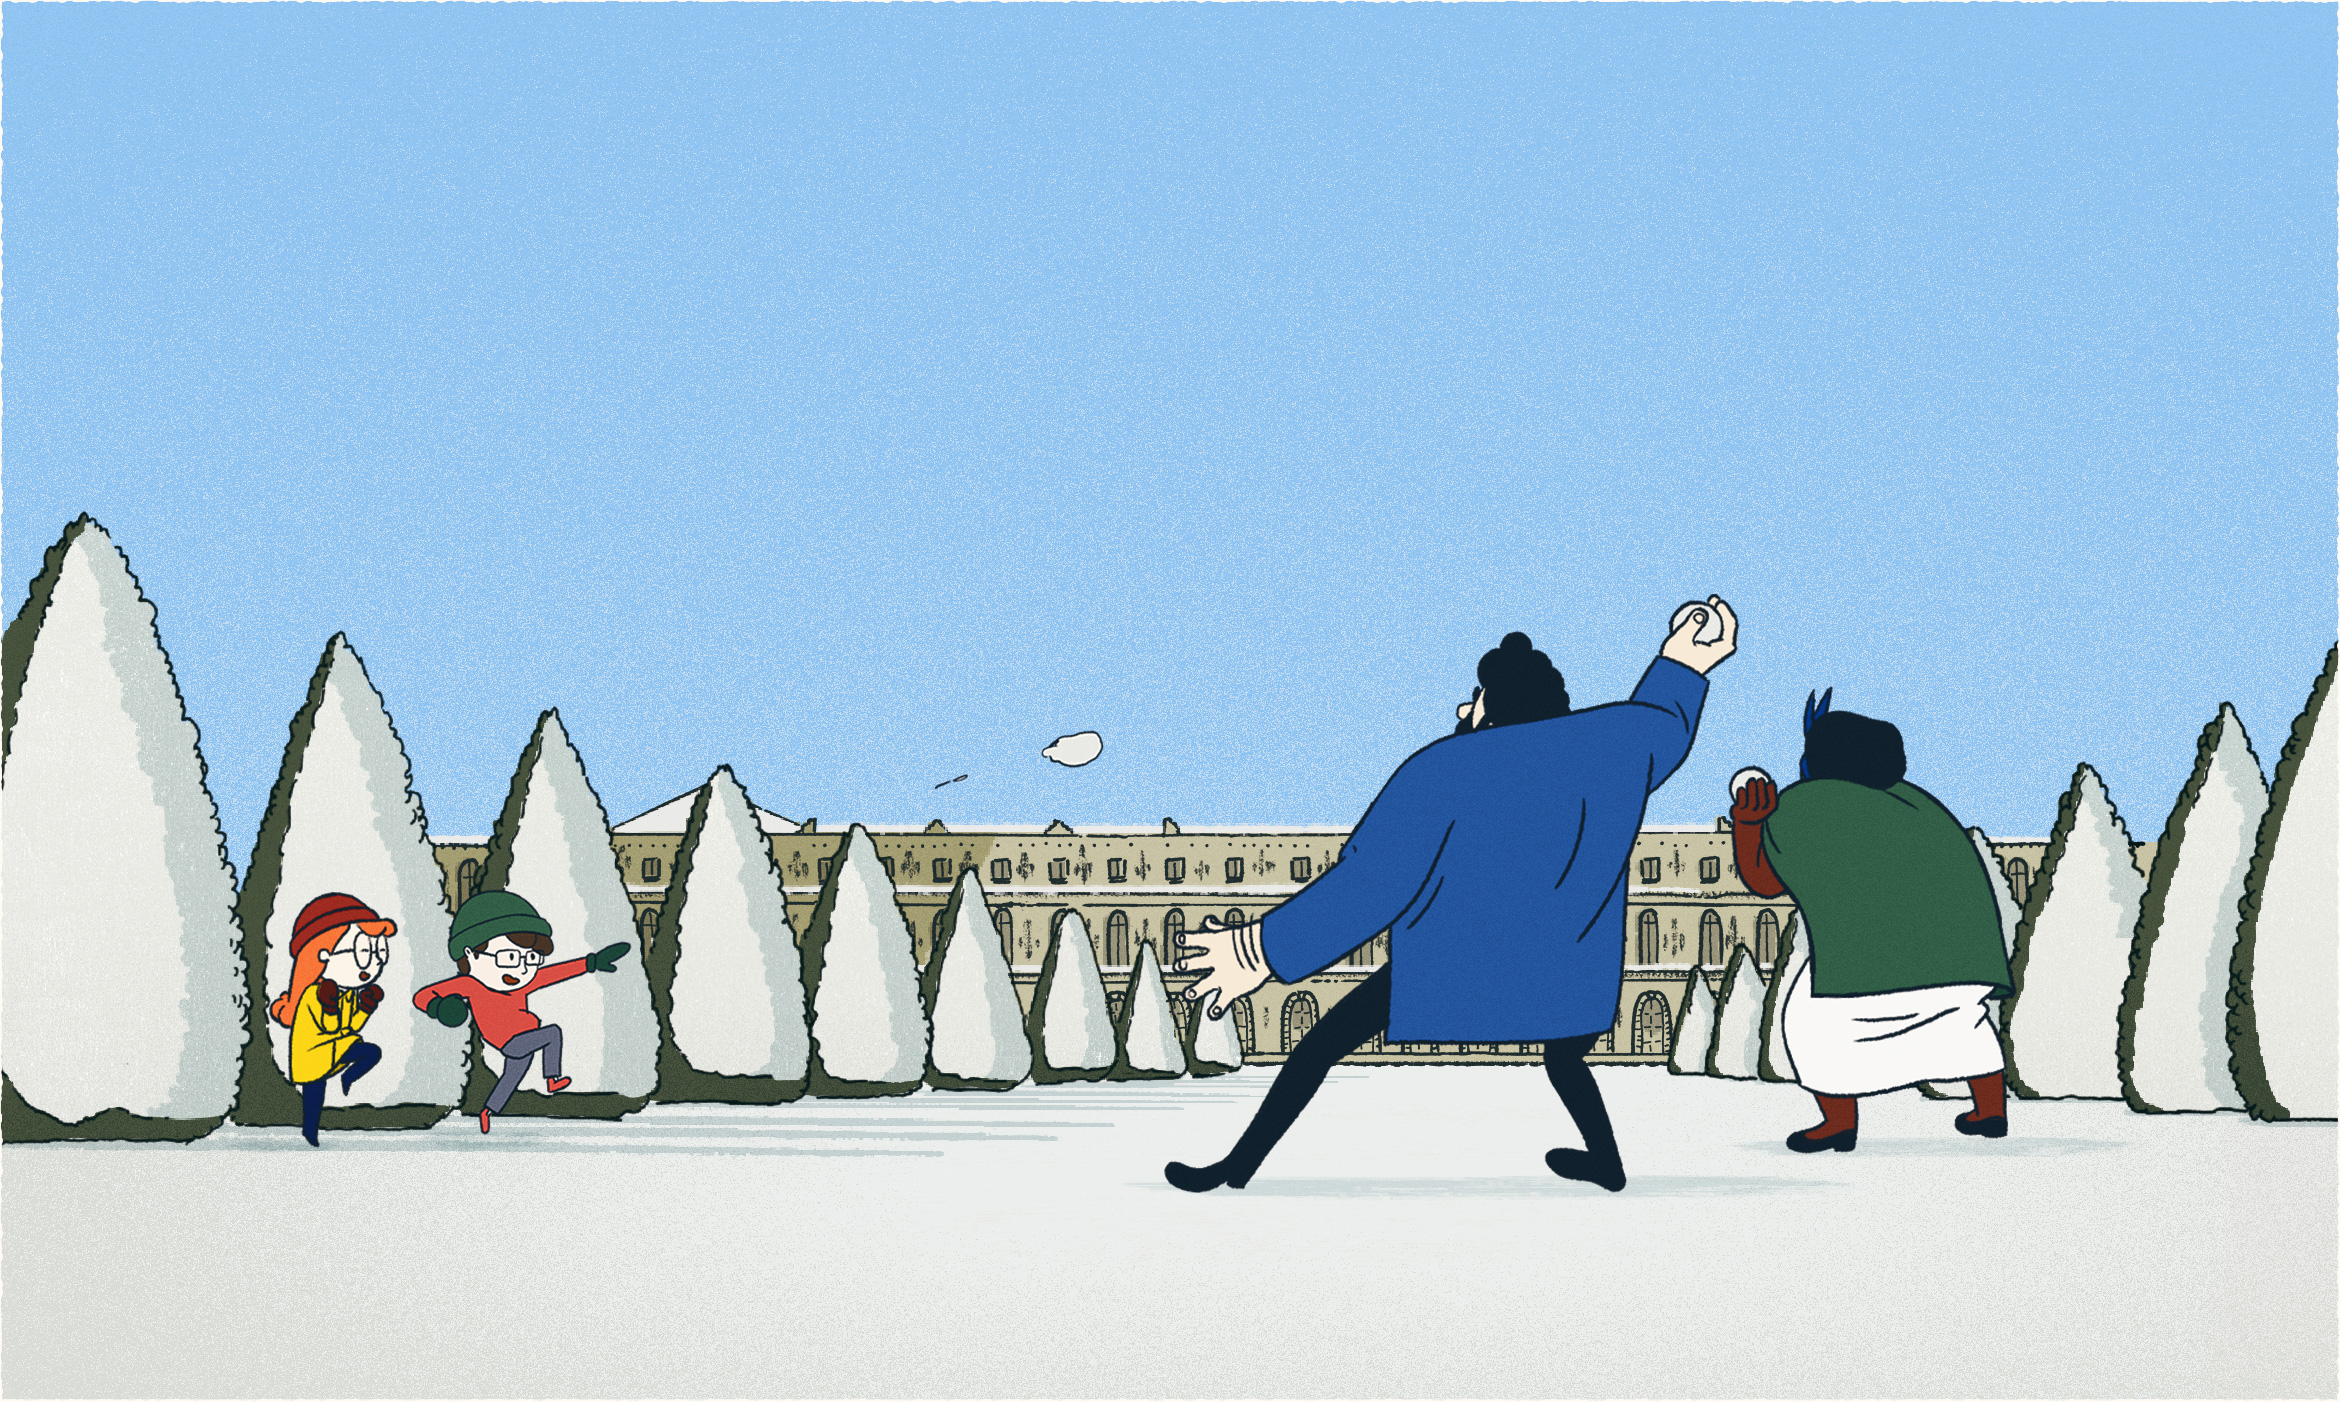 La vie de Château - La bataille de neige